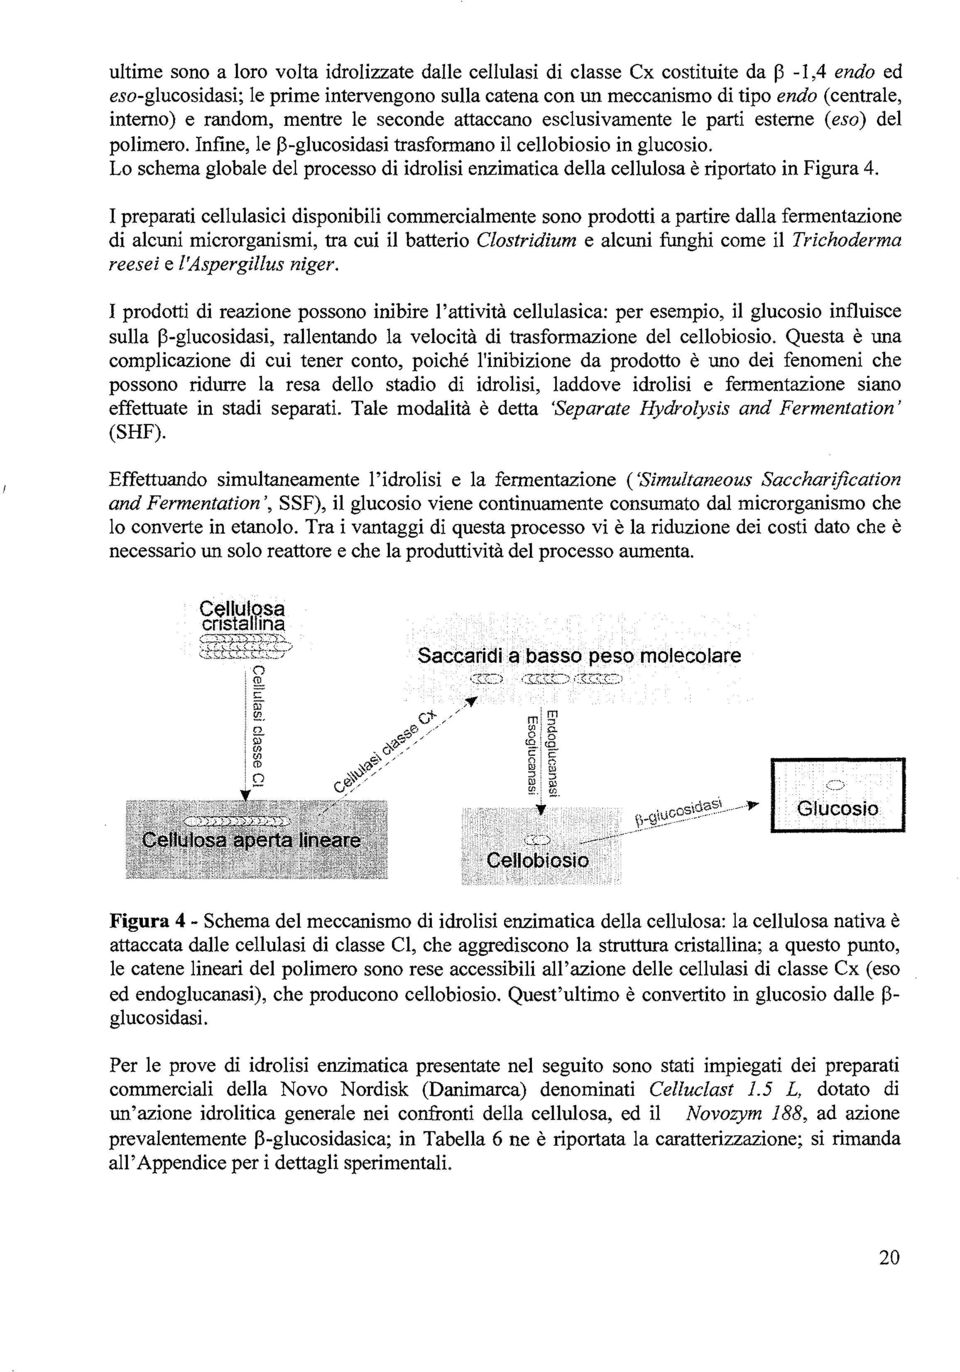 Lo schema globale del processo di idrolisi enzimatica della cellulosa è riportato in Figura 4.